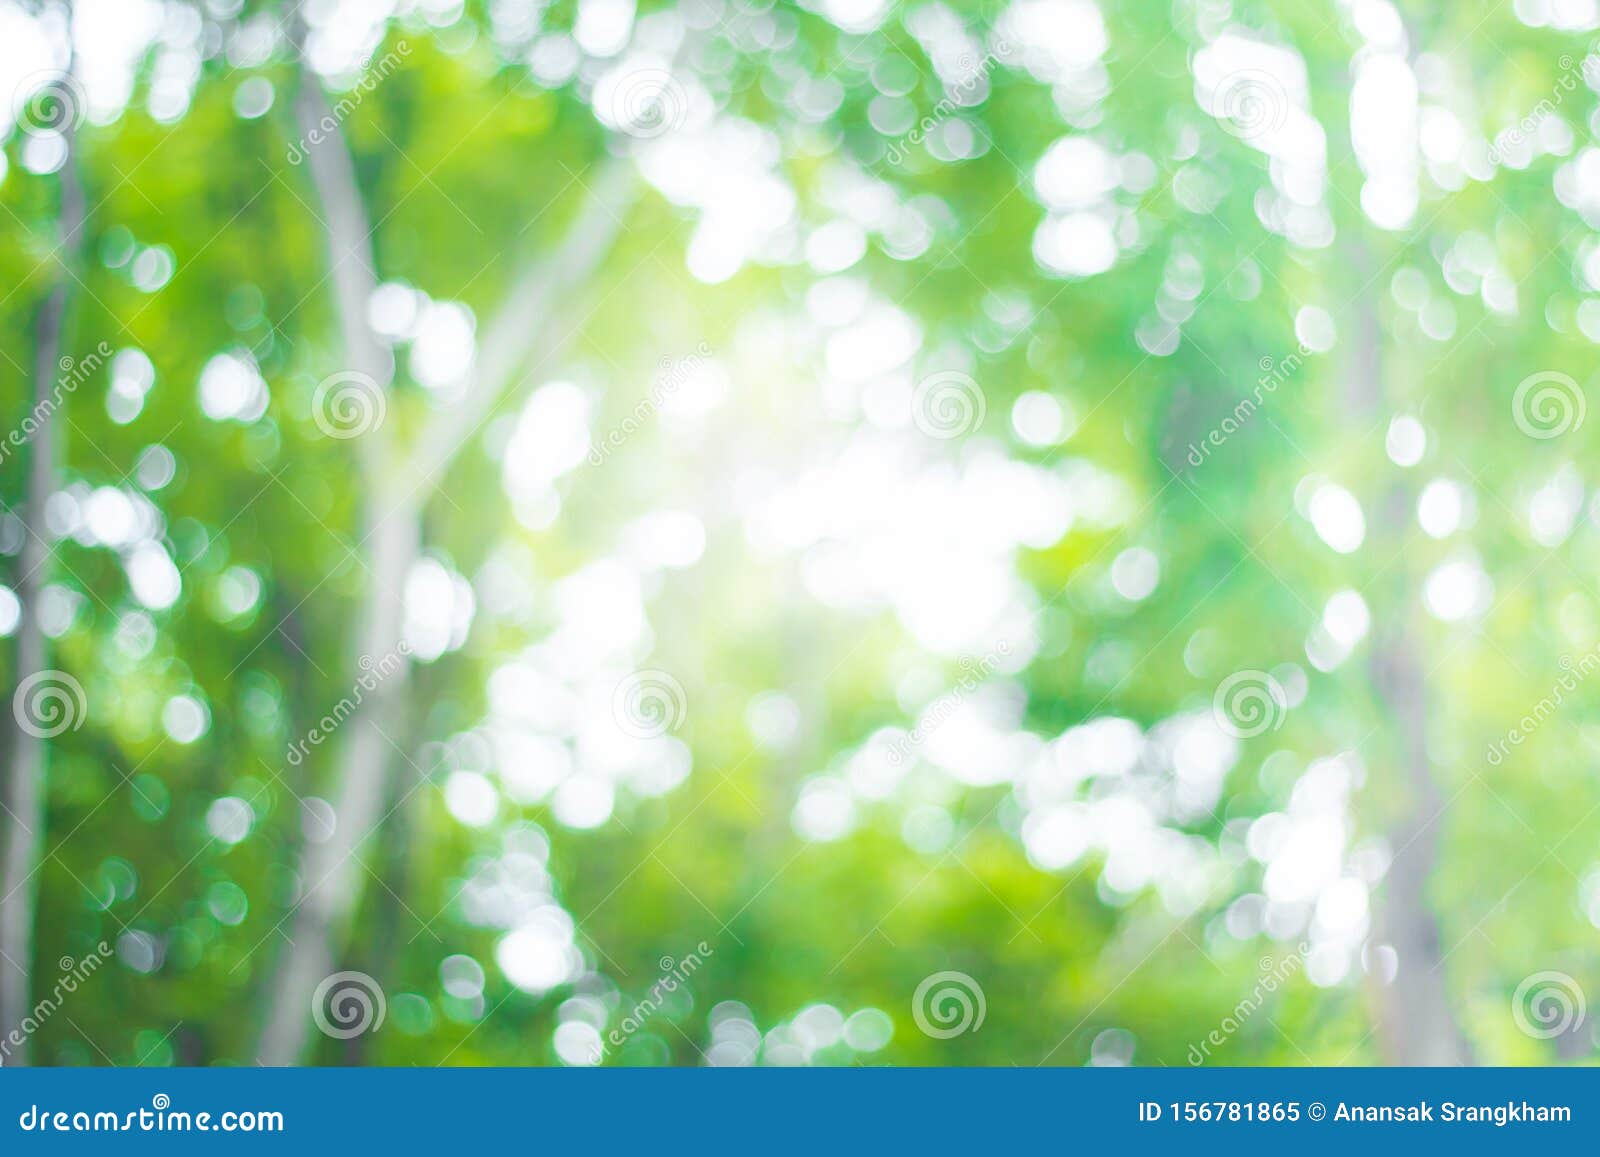 Nền mờ màu xanh lá cây trừu tượng: Bức ảnh này sẽ mang đến cho bạn một điểm nhấn tuyệt vời cho bức ảnh của bạn. Với tông màu xanh lá cây trừu tượng mờ mờ, bạn sẽ có một bức ảnh lung linh, tinh tế và độc đáo.